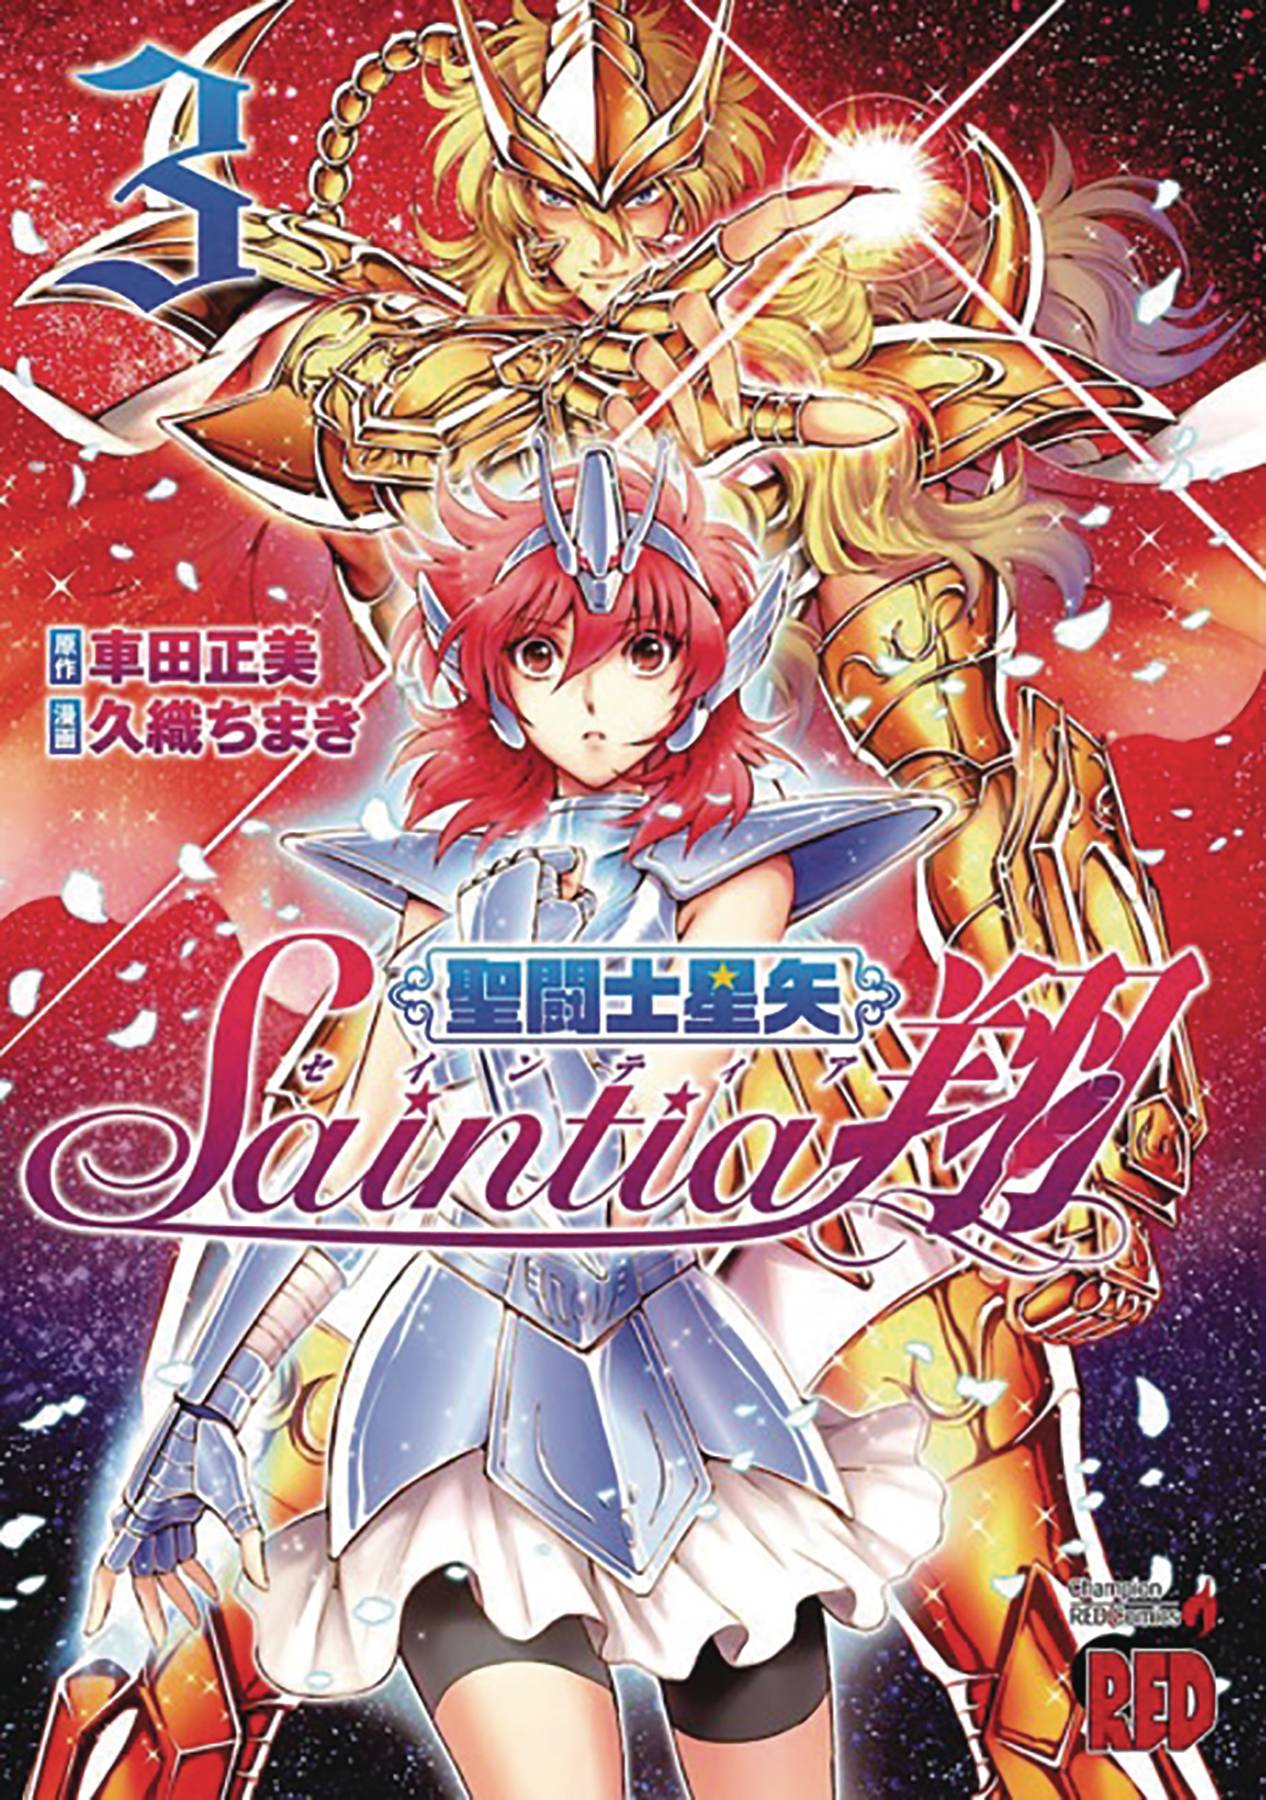 Saint Seiya Saintia Sho Manga Volume 3